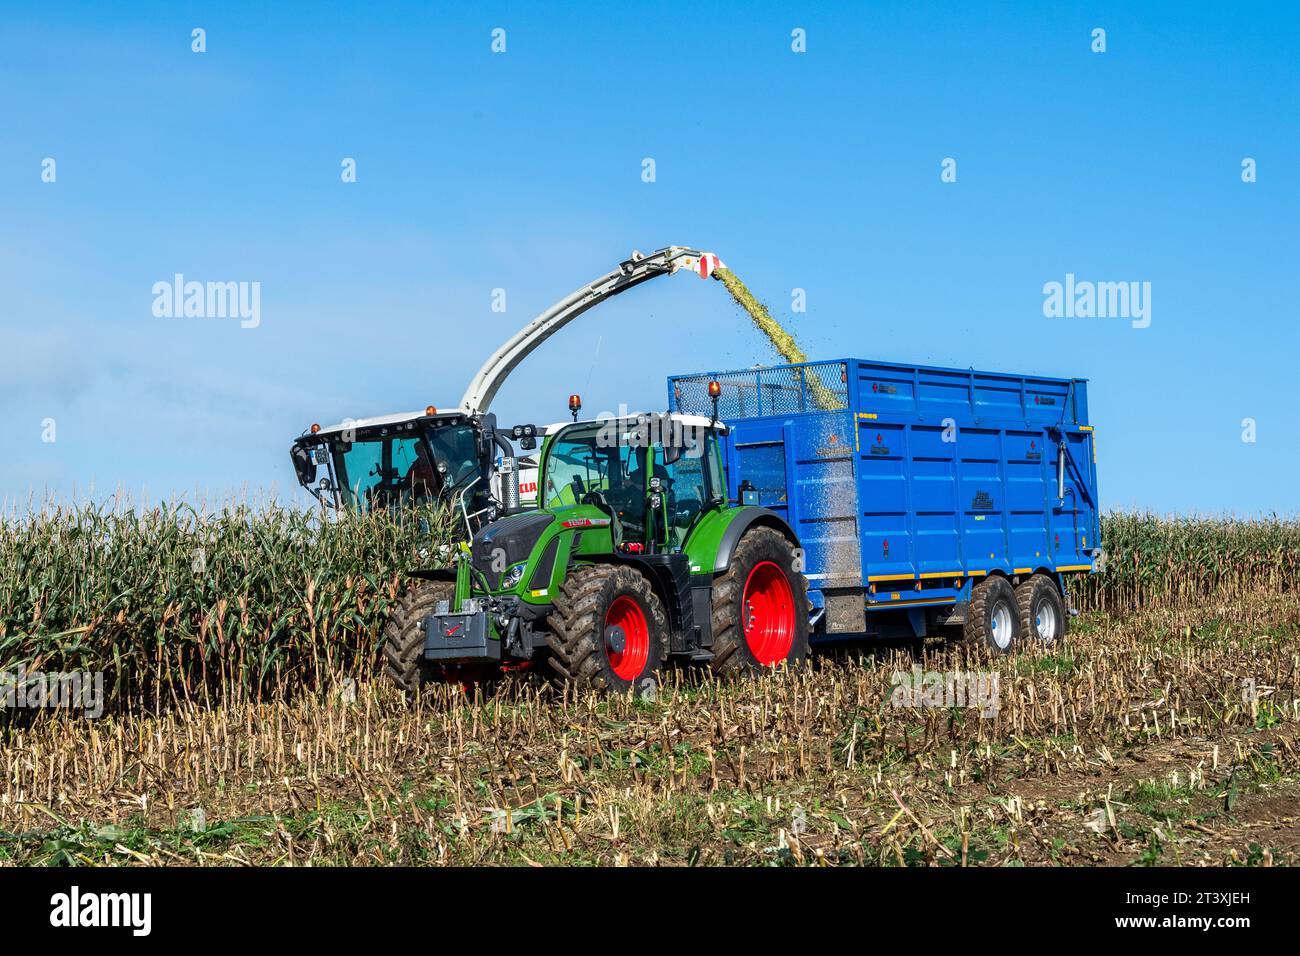 Mark Troy Agricultural Contractors, West Cork, Irlanda, raccoglie mais utilizzando una mietitrebbia Claas Jaguar 990 per produrre 25 tonnellate per acro. Foto Stock